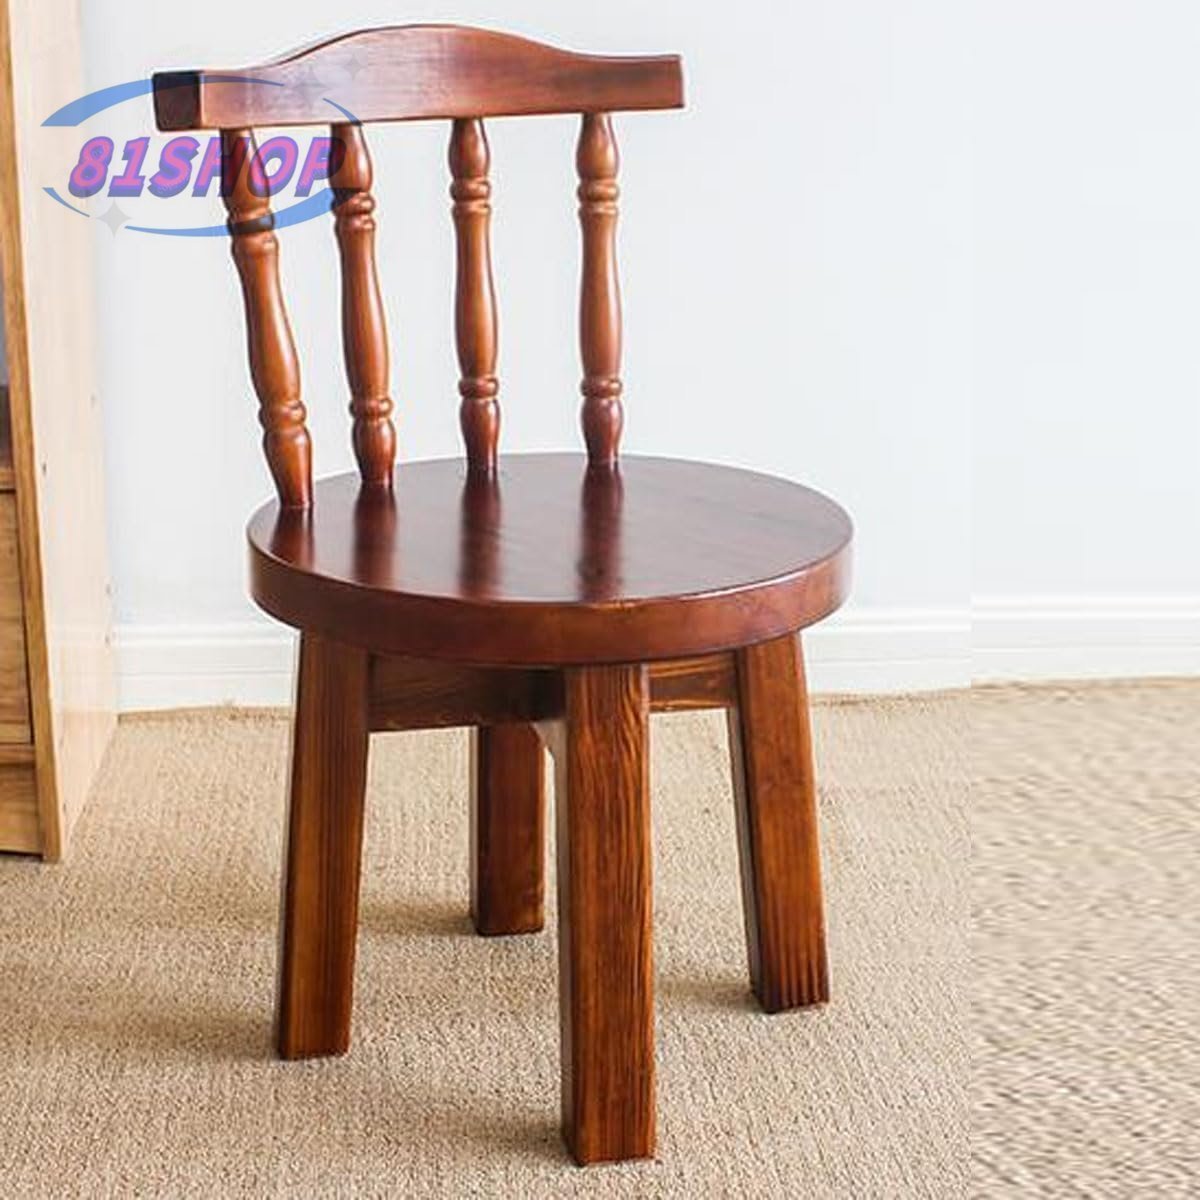 木製チェア ソリッドウッド製チェア 背もたれスツール 小型チェア 家庭用低スツール 丸型スツール 椅子 家具 インテリア